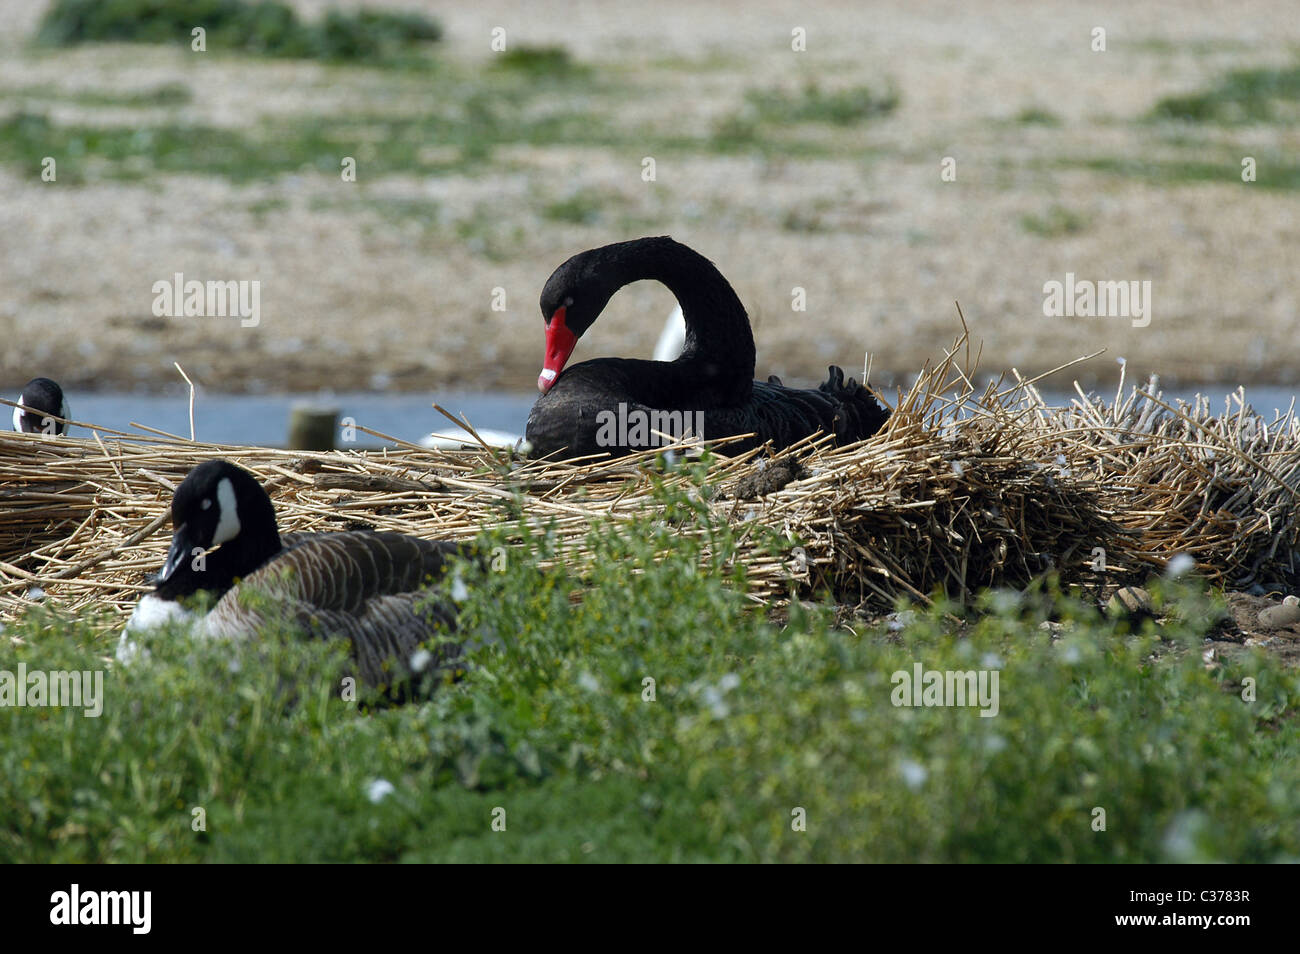 Un australiano Black Swan non nativa per il Regno Unito. Questo escapee nidificante alla Abbotsbury Swannery, Dorset, Regno Unito. Foto Stock